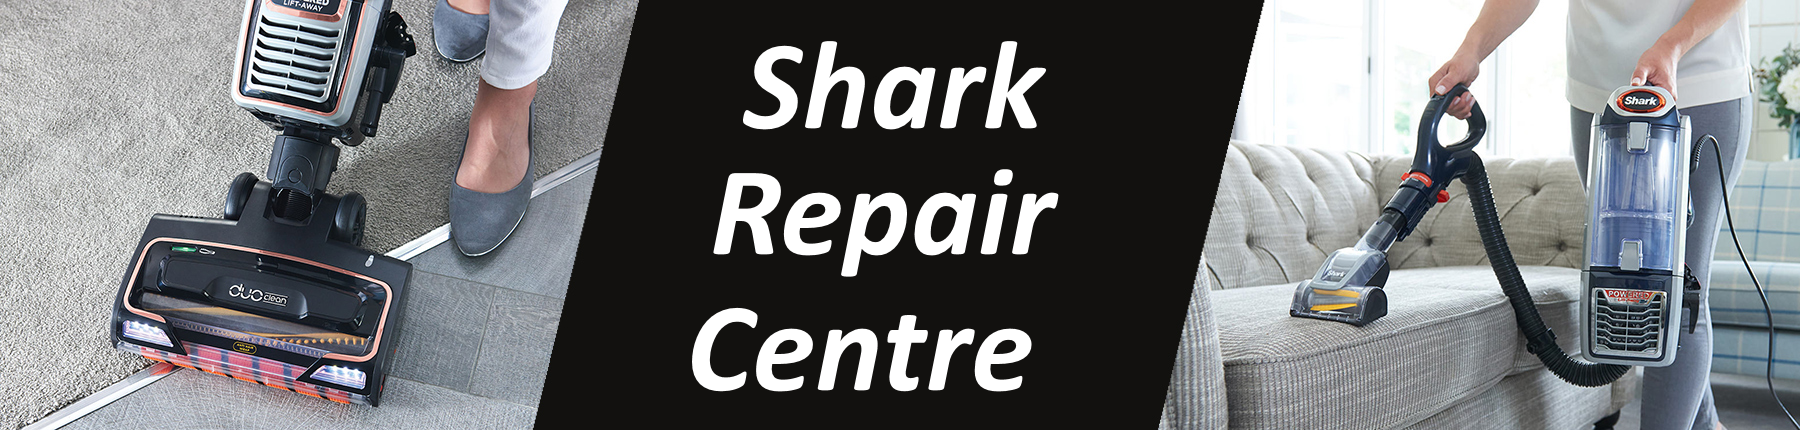 Shark Repair & Service Centre Banner